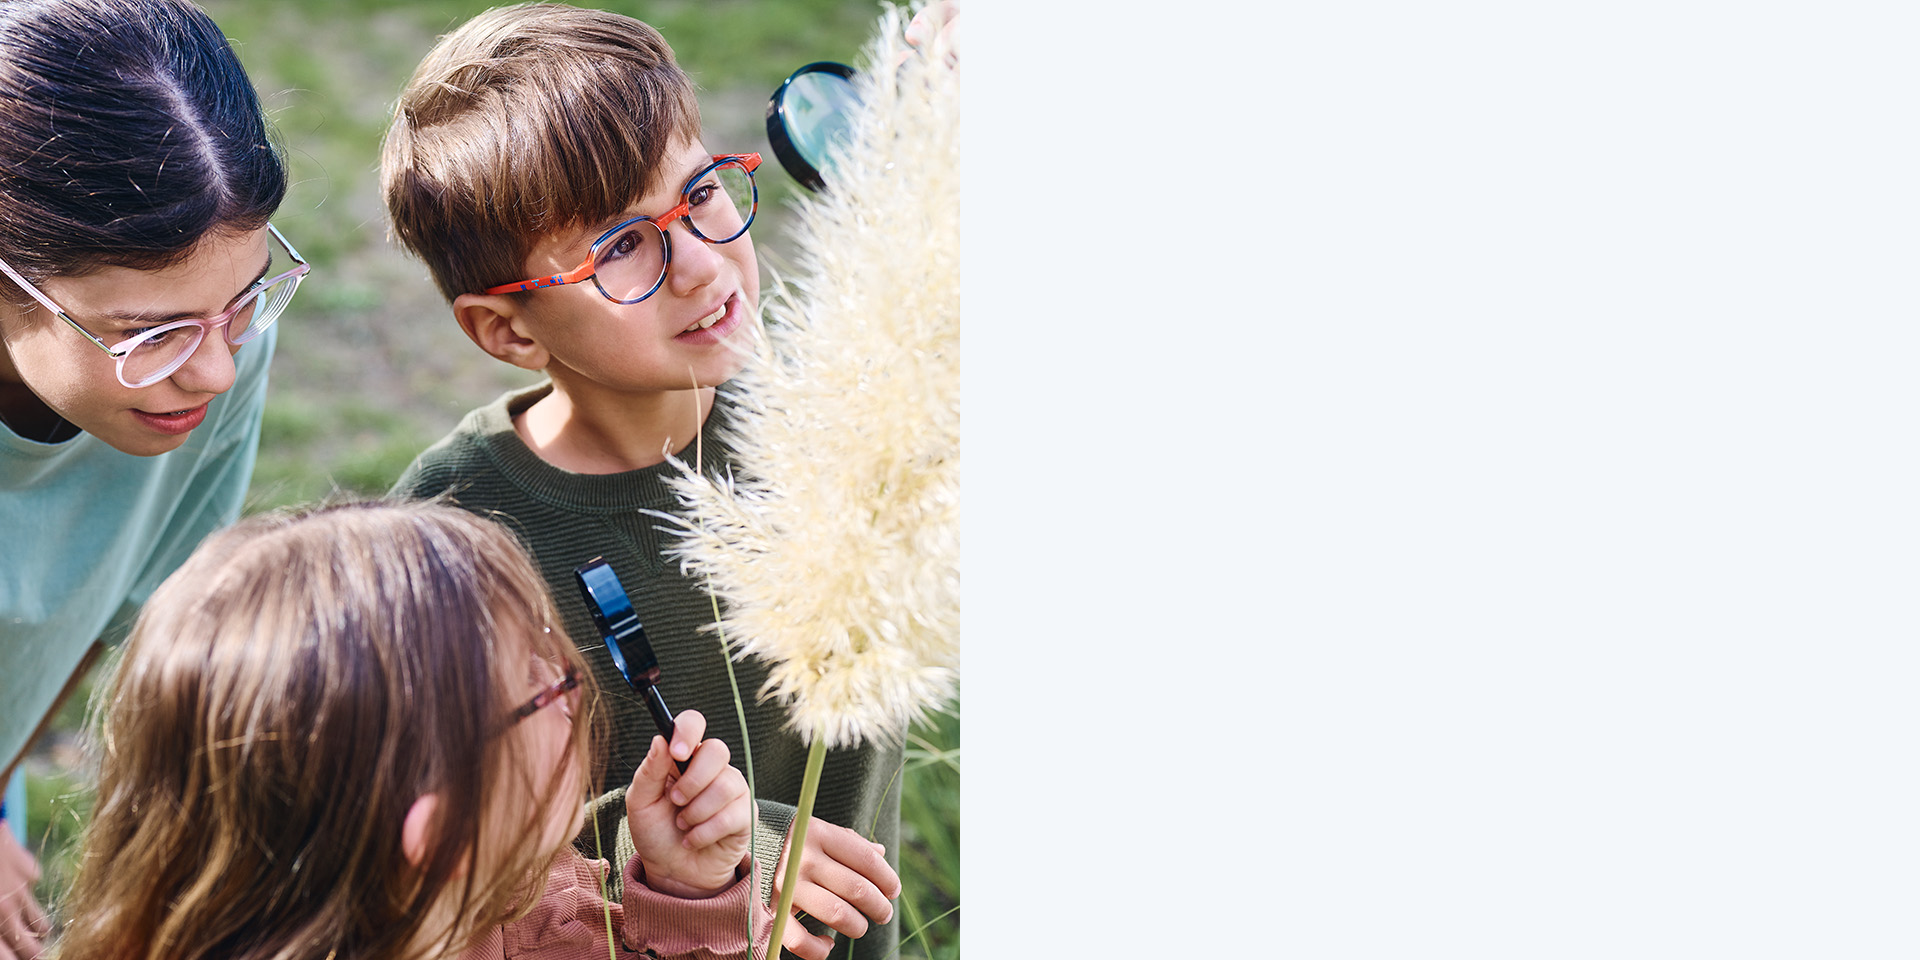 ZEISS MyoCare gözlük camları kullanan 2 kız ve 1 erkek çocuk. Bir bitkiye bakıyorlar, üç çocuktan ikisi bitkiye büyüteçle bakıyor.